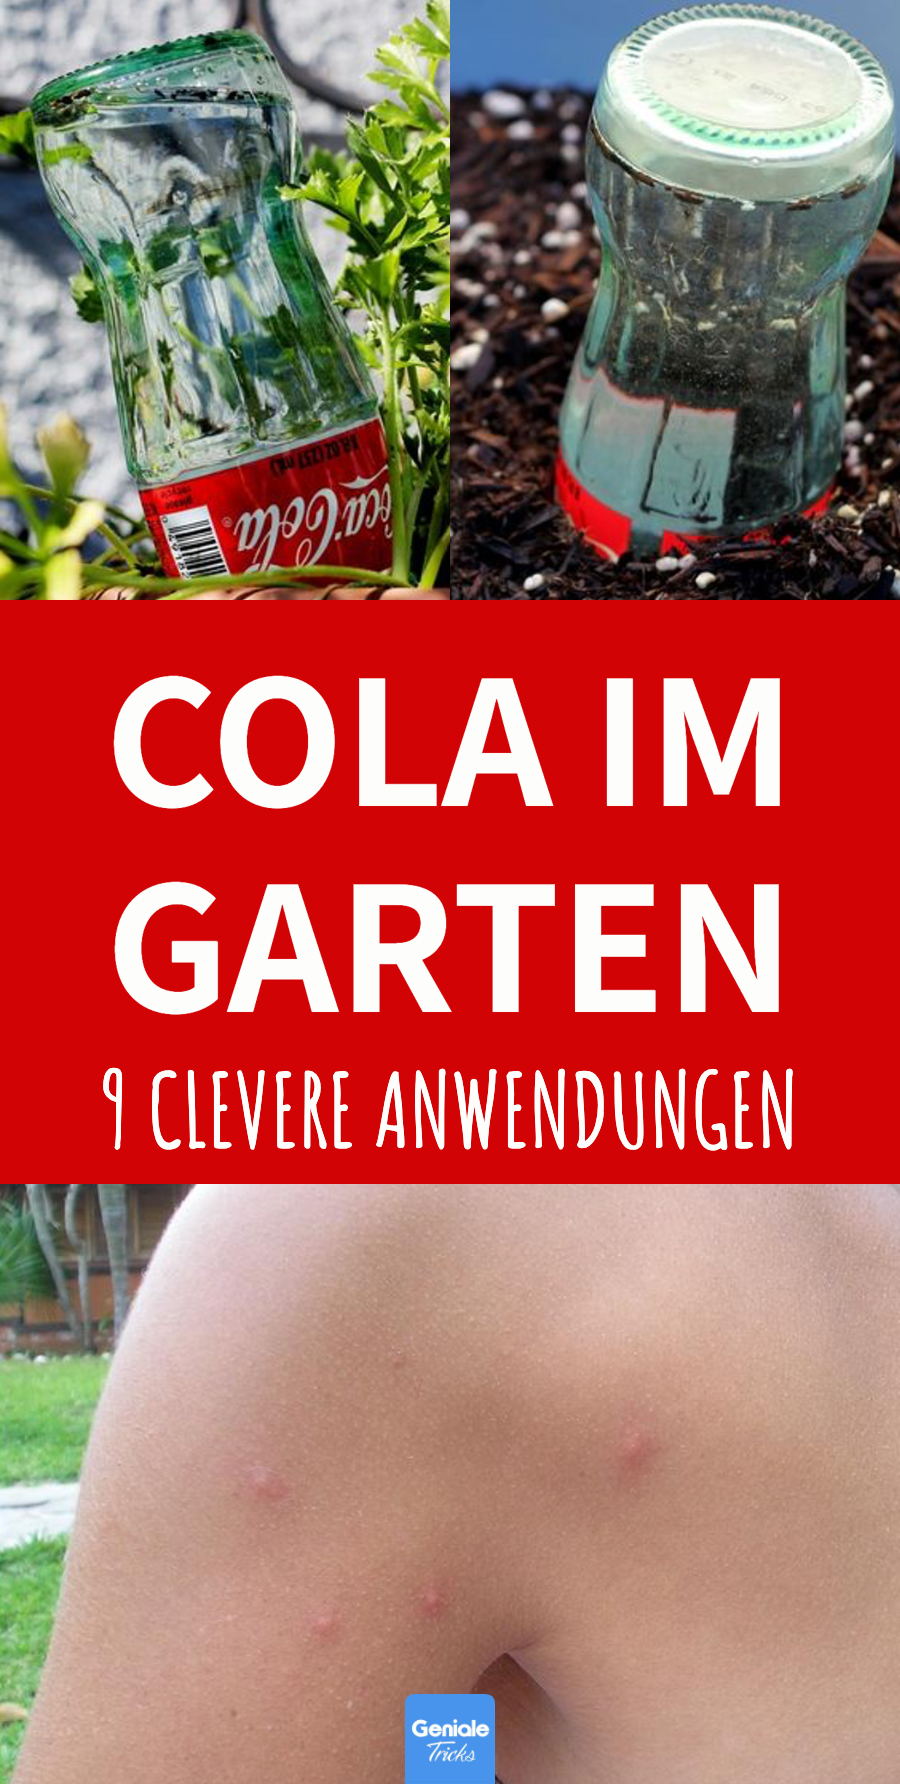 9 Cola-Hacks für den Garten, die du dir merken musst